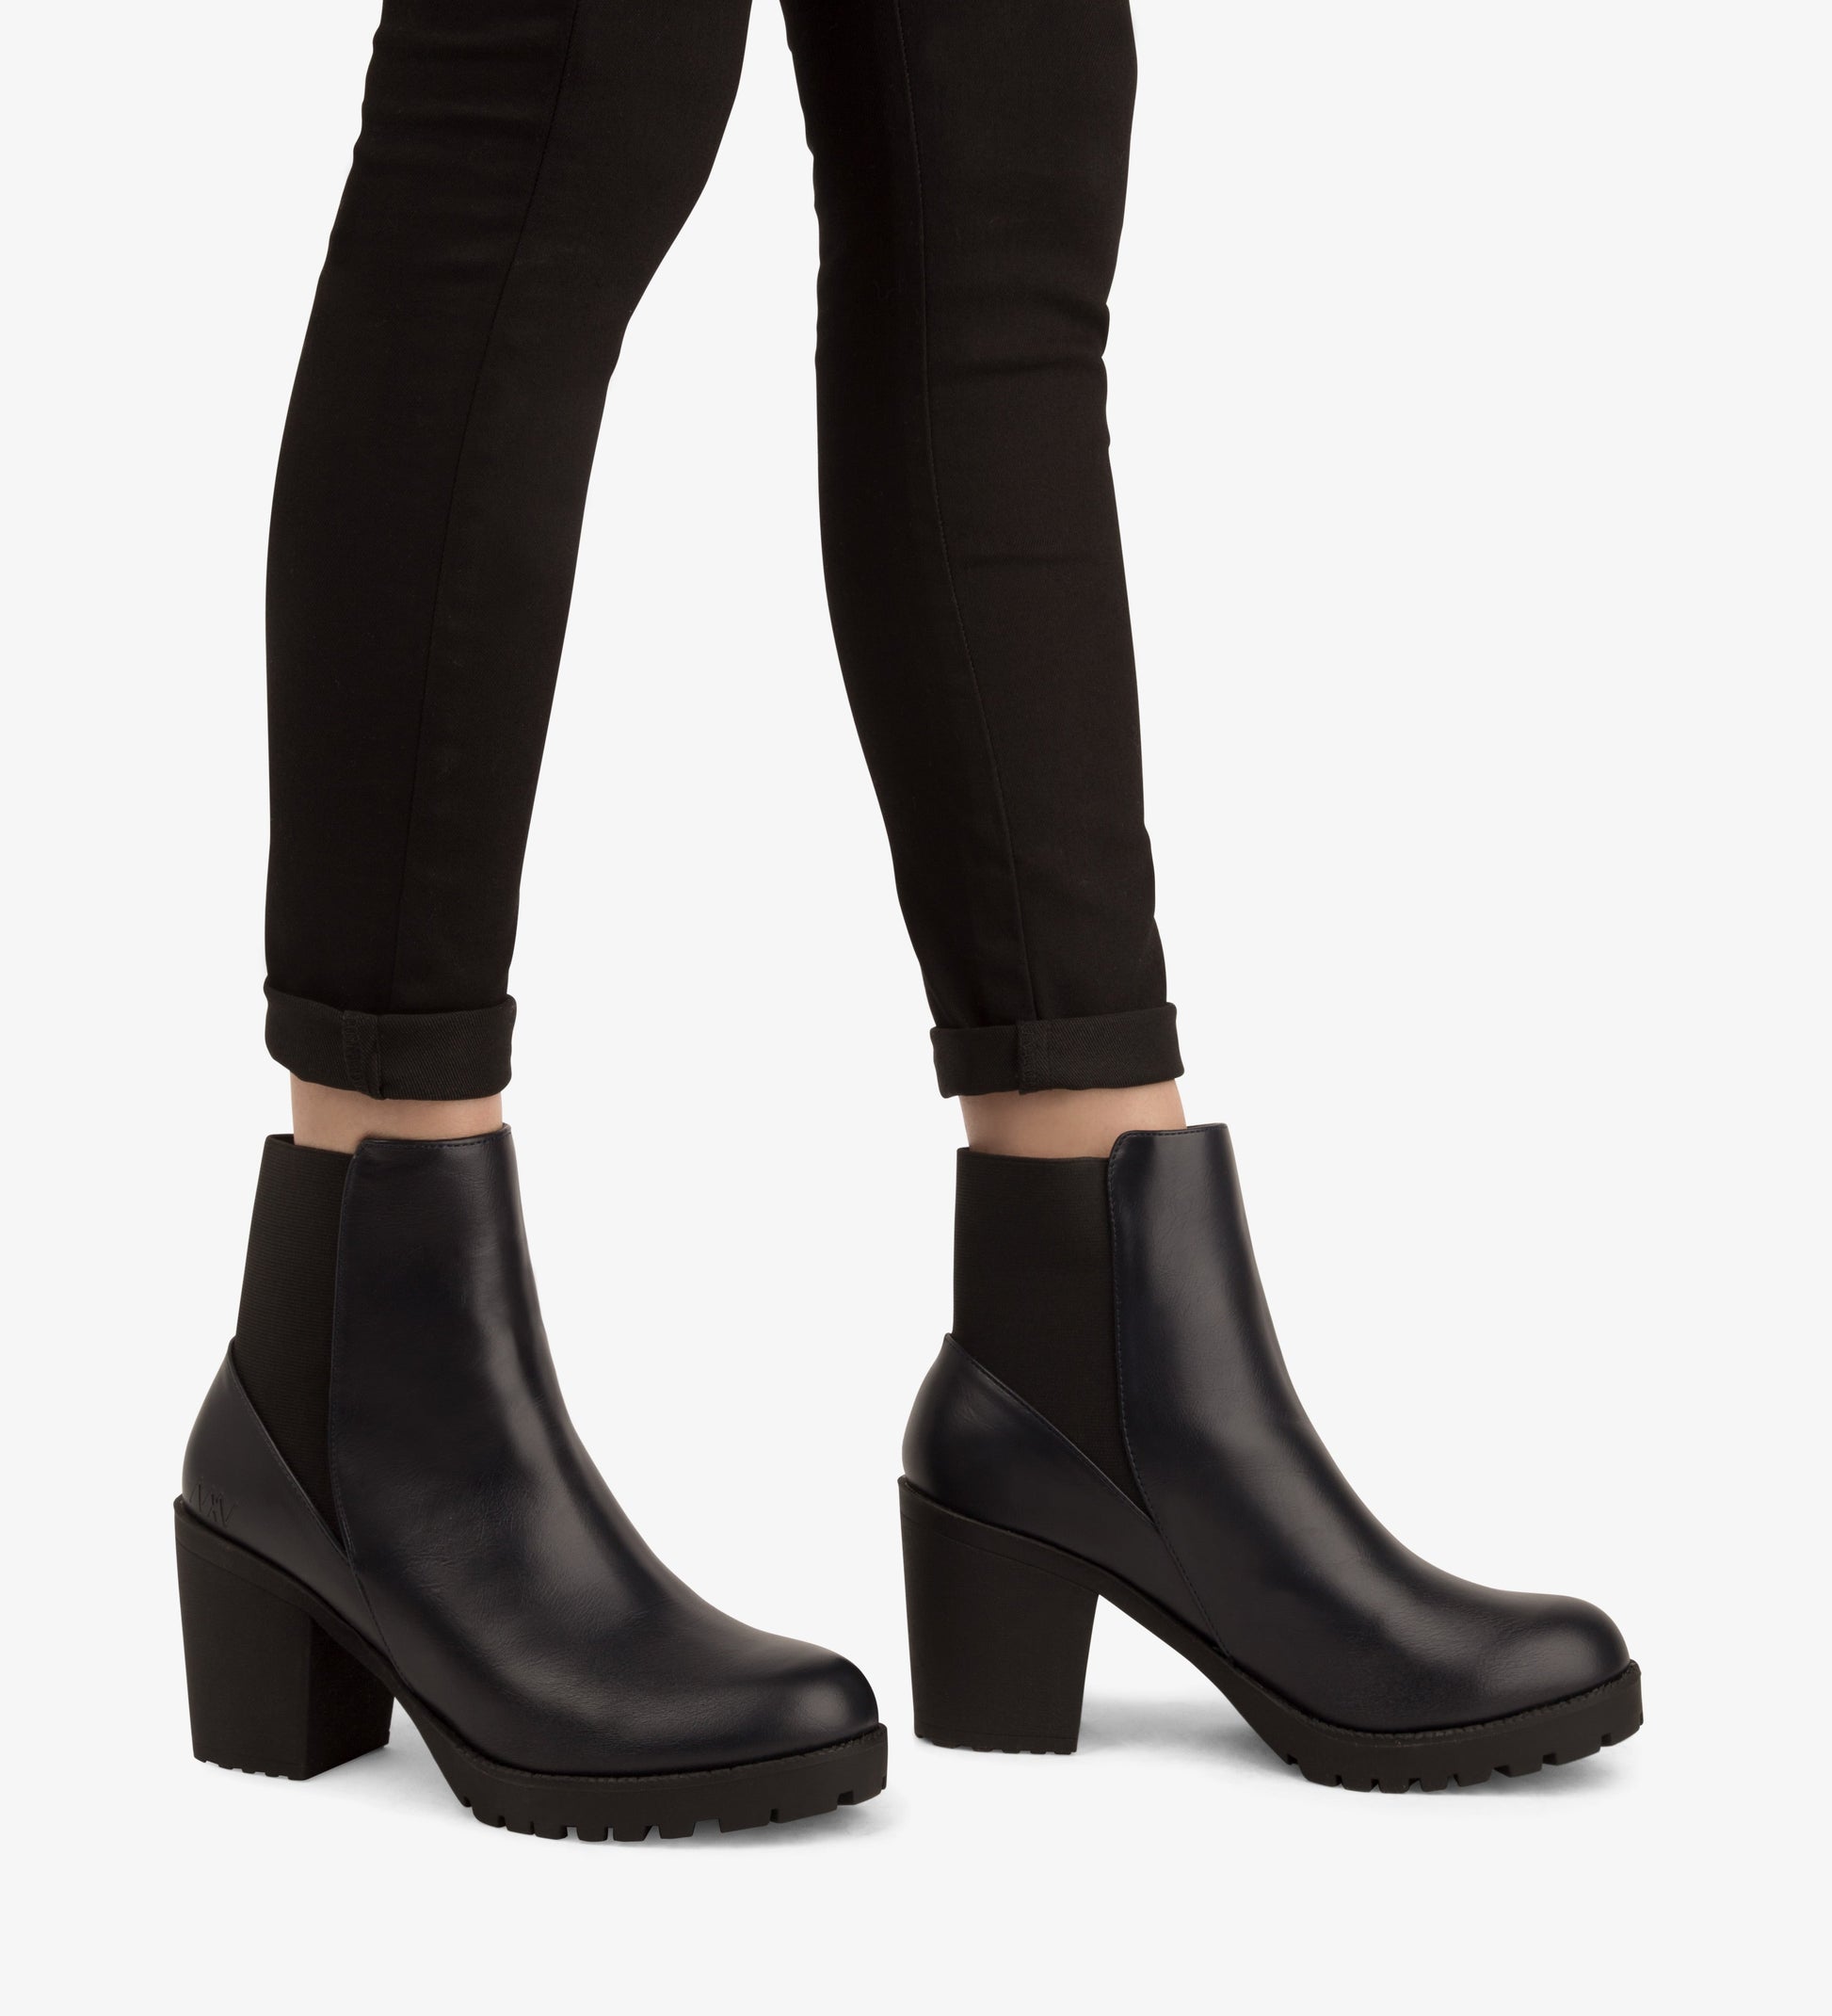 MONTROYAL Women's Vegan Boots | Color: Black - variant::ink